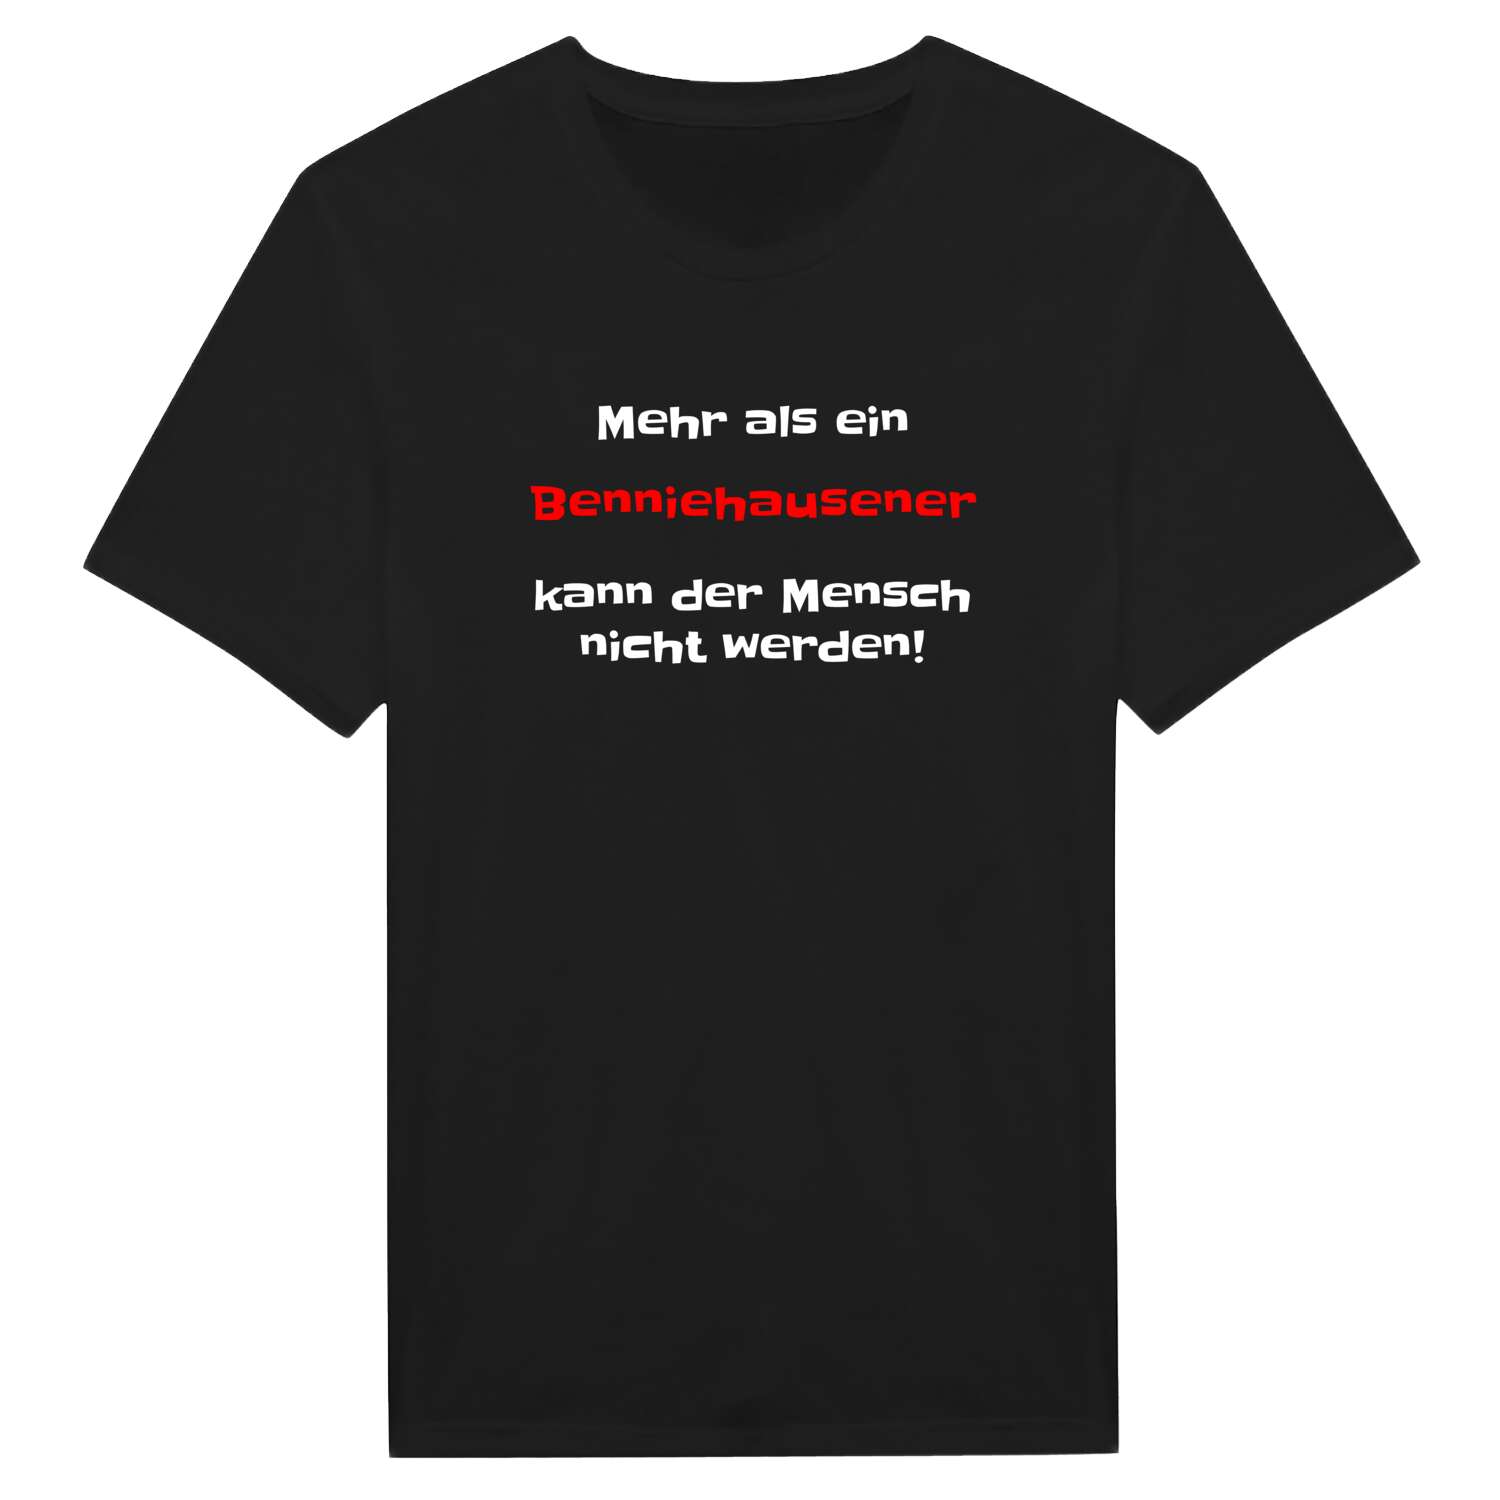 Benniehausen T-Shirt »Mehr als ein«